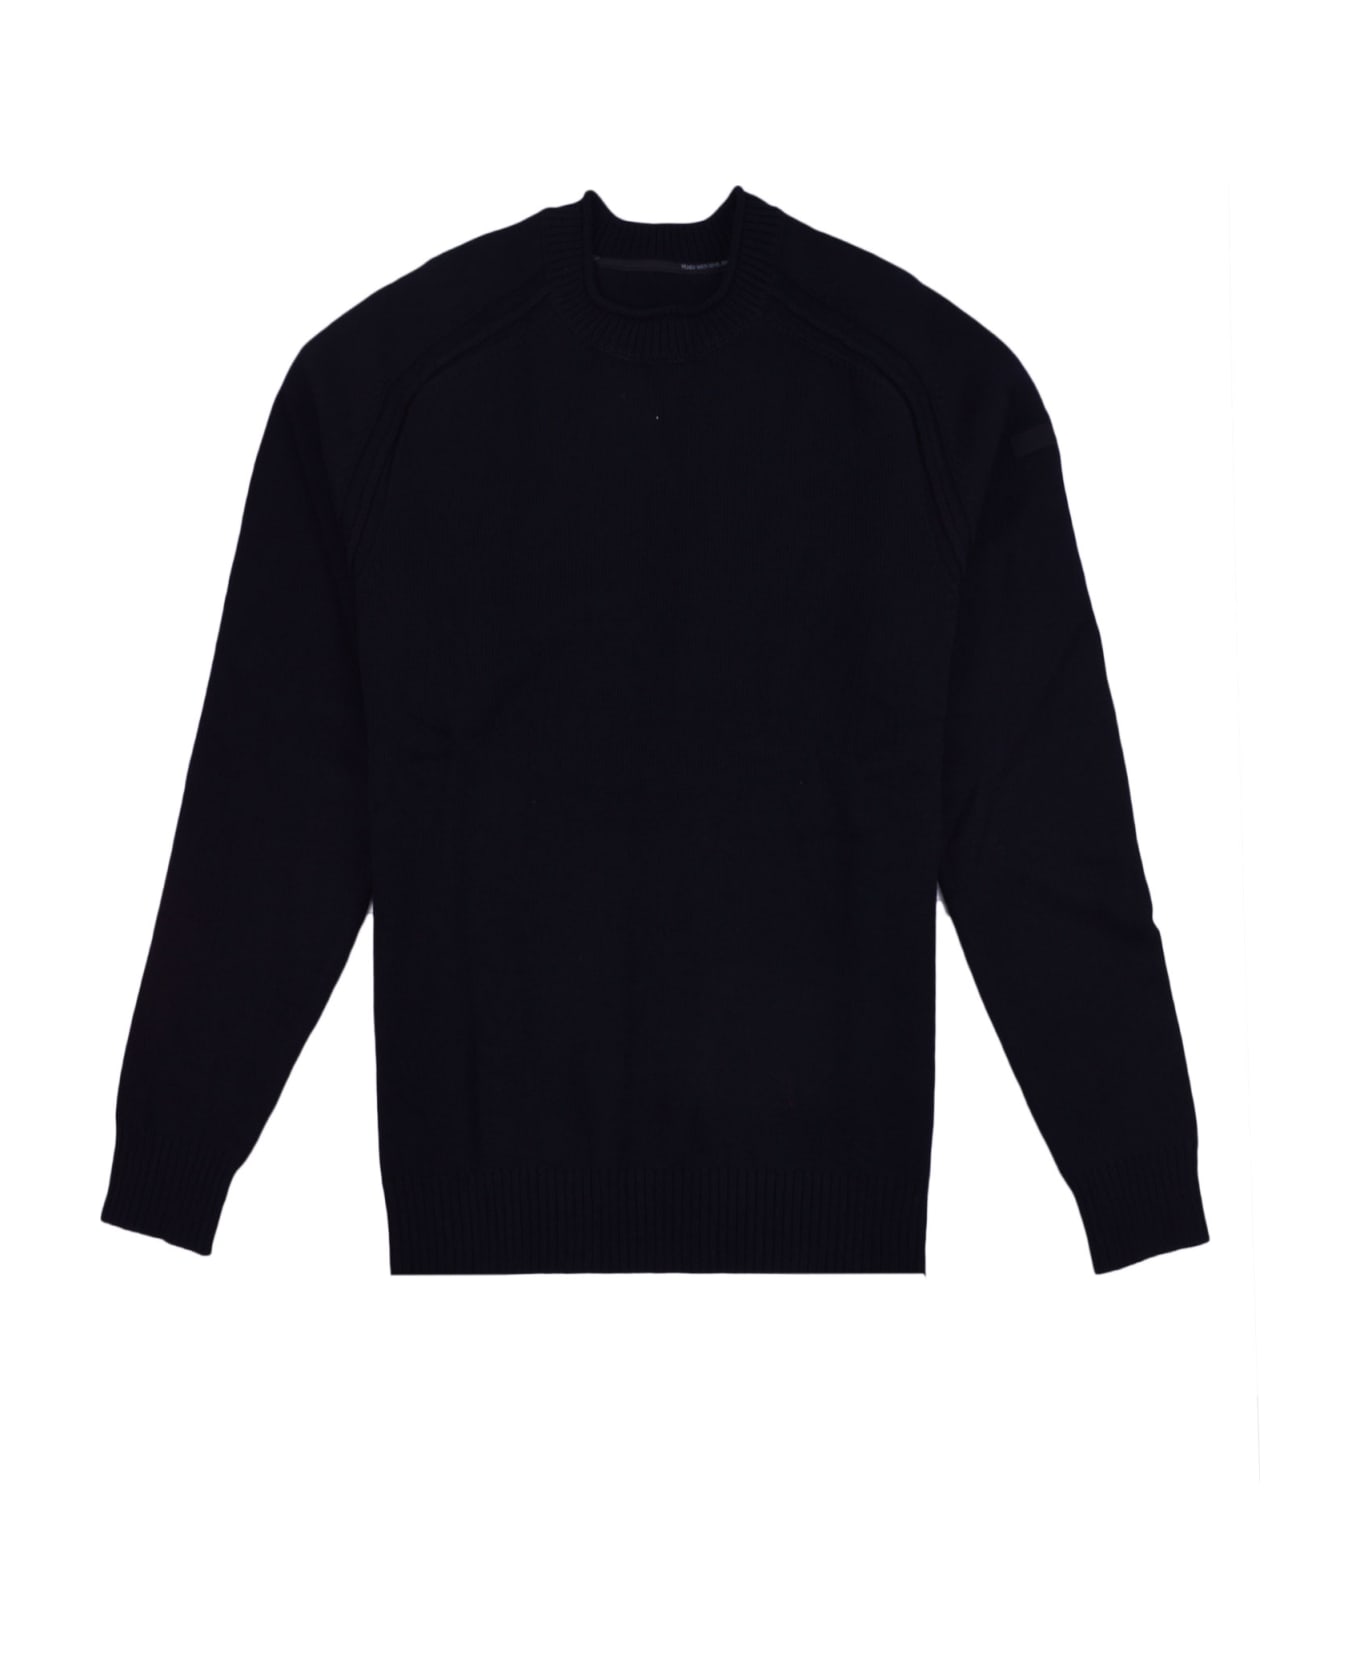 RRD - Roberto Ricci Design Sweater